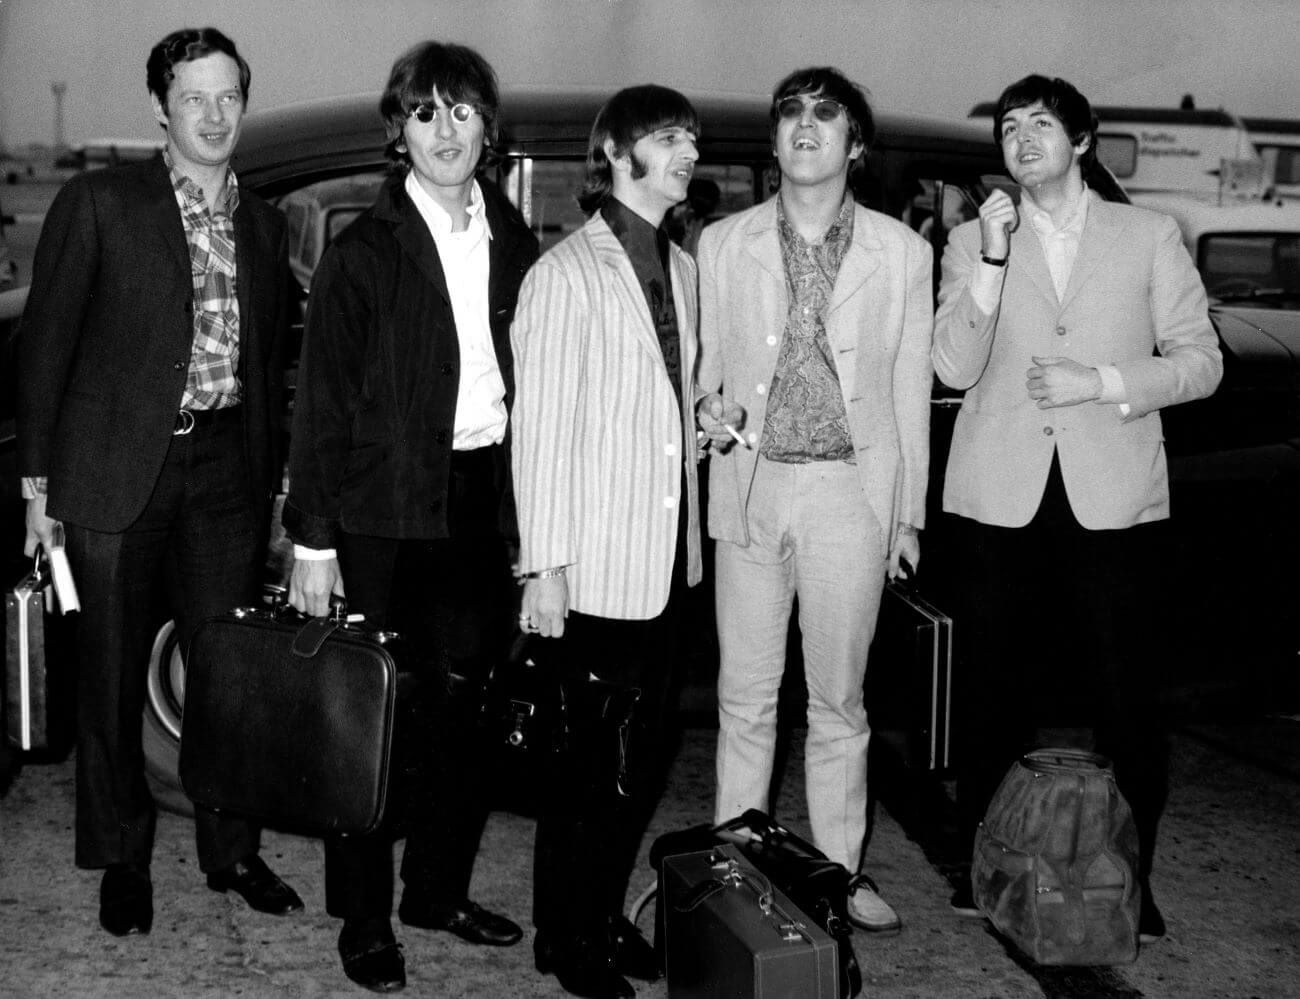 Warum Brian Epstein, Manager der Beatles, das Abschlusskonzert der Band verpasste